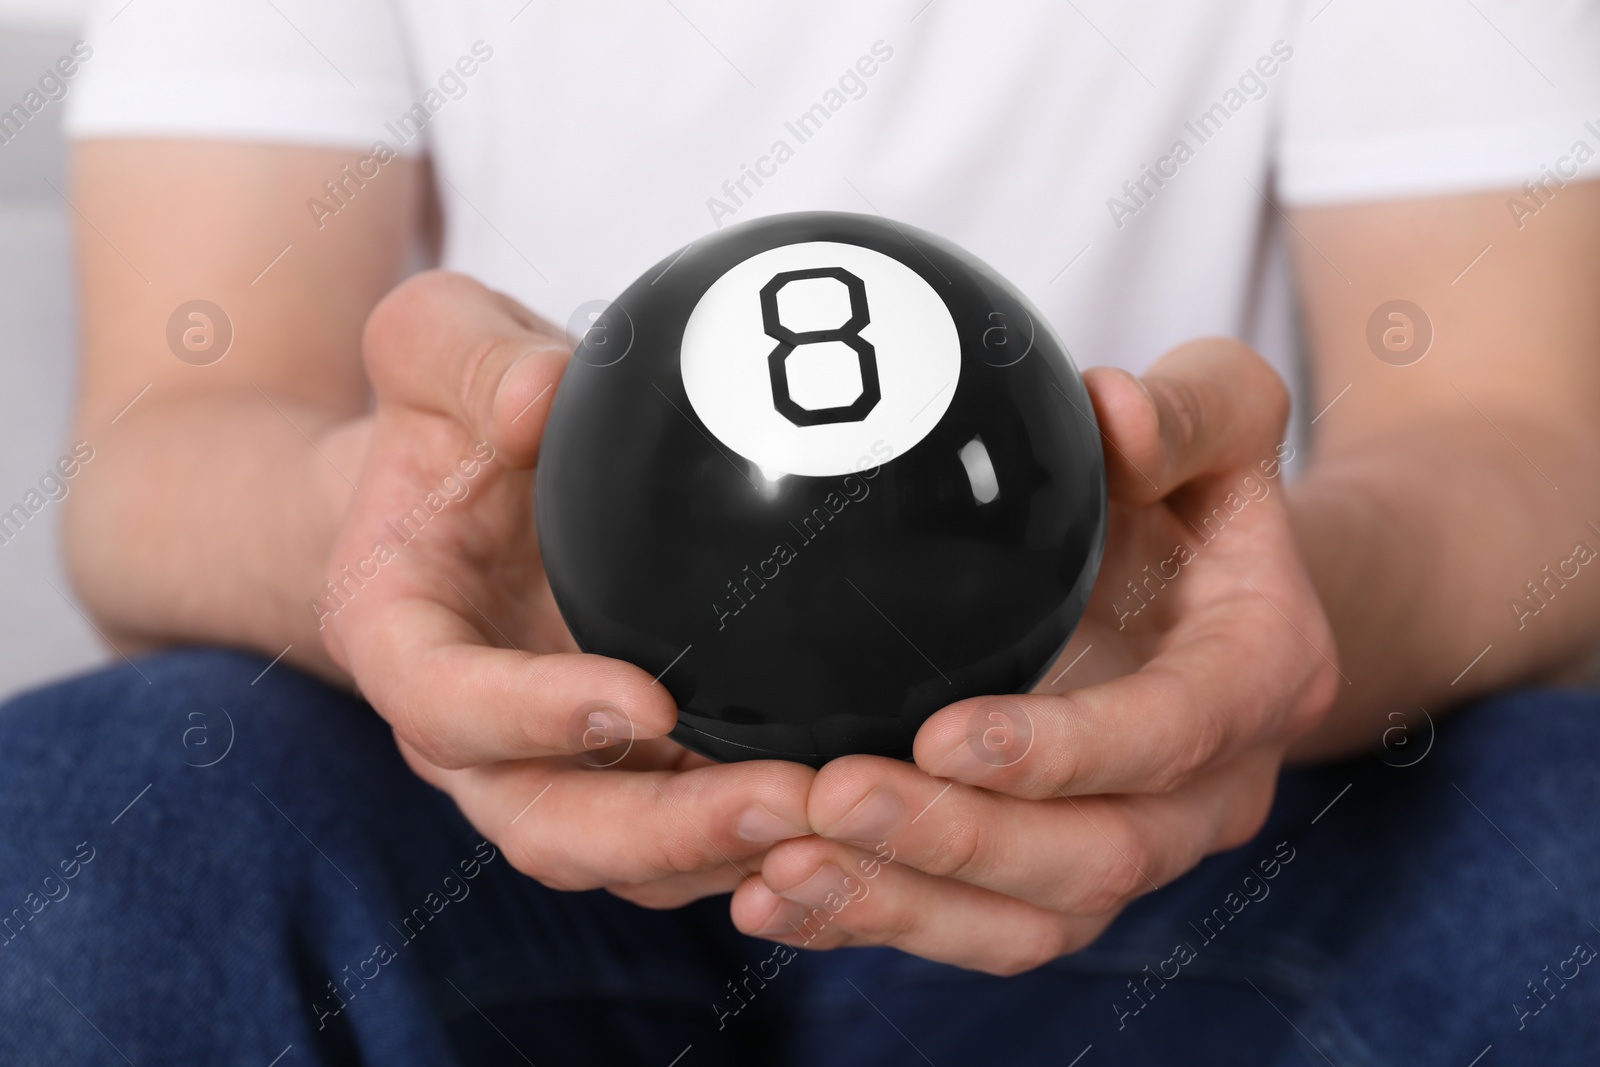 Photo of Man holding magic eight ball indoors, closeup